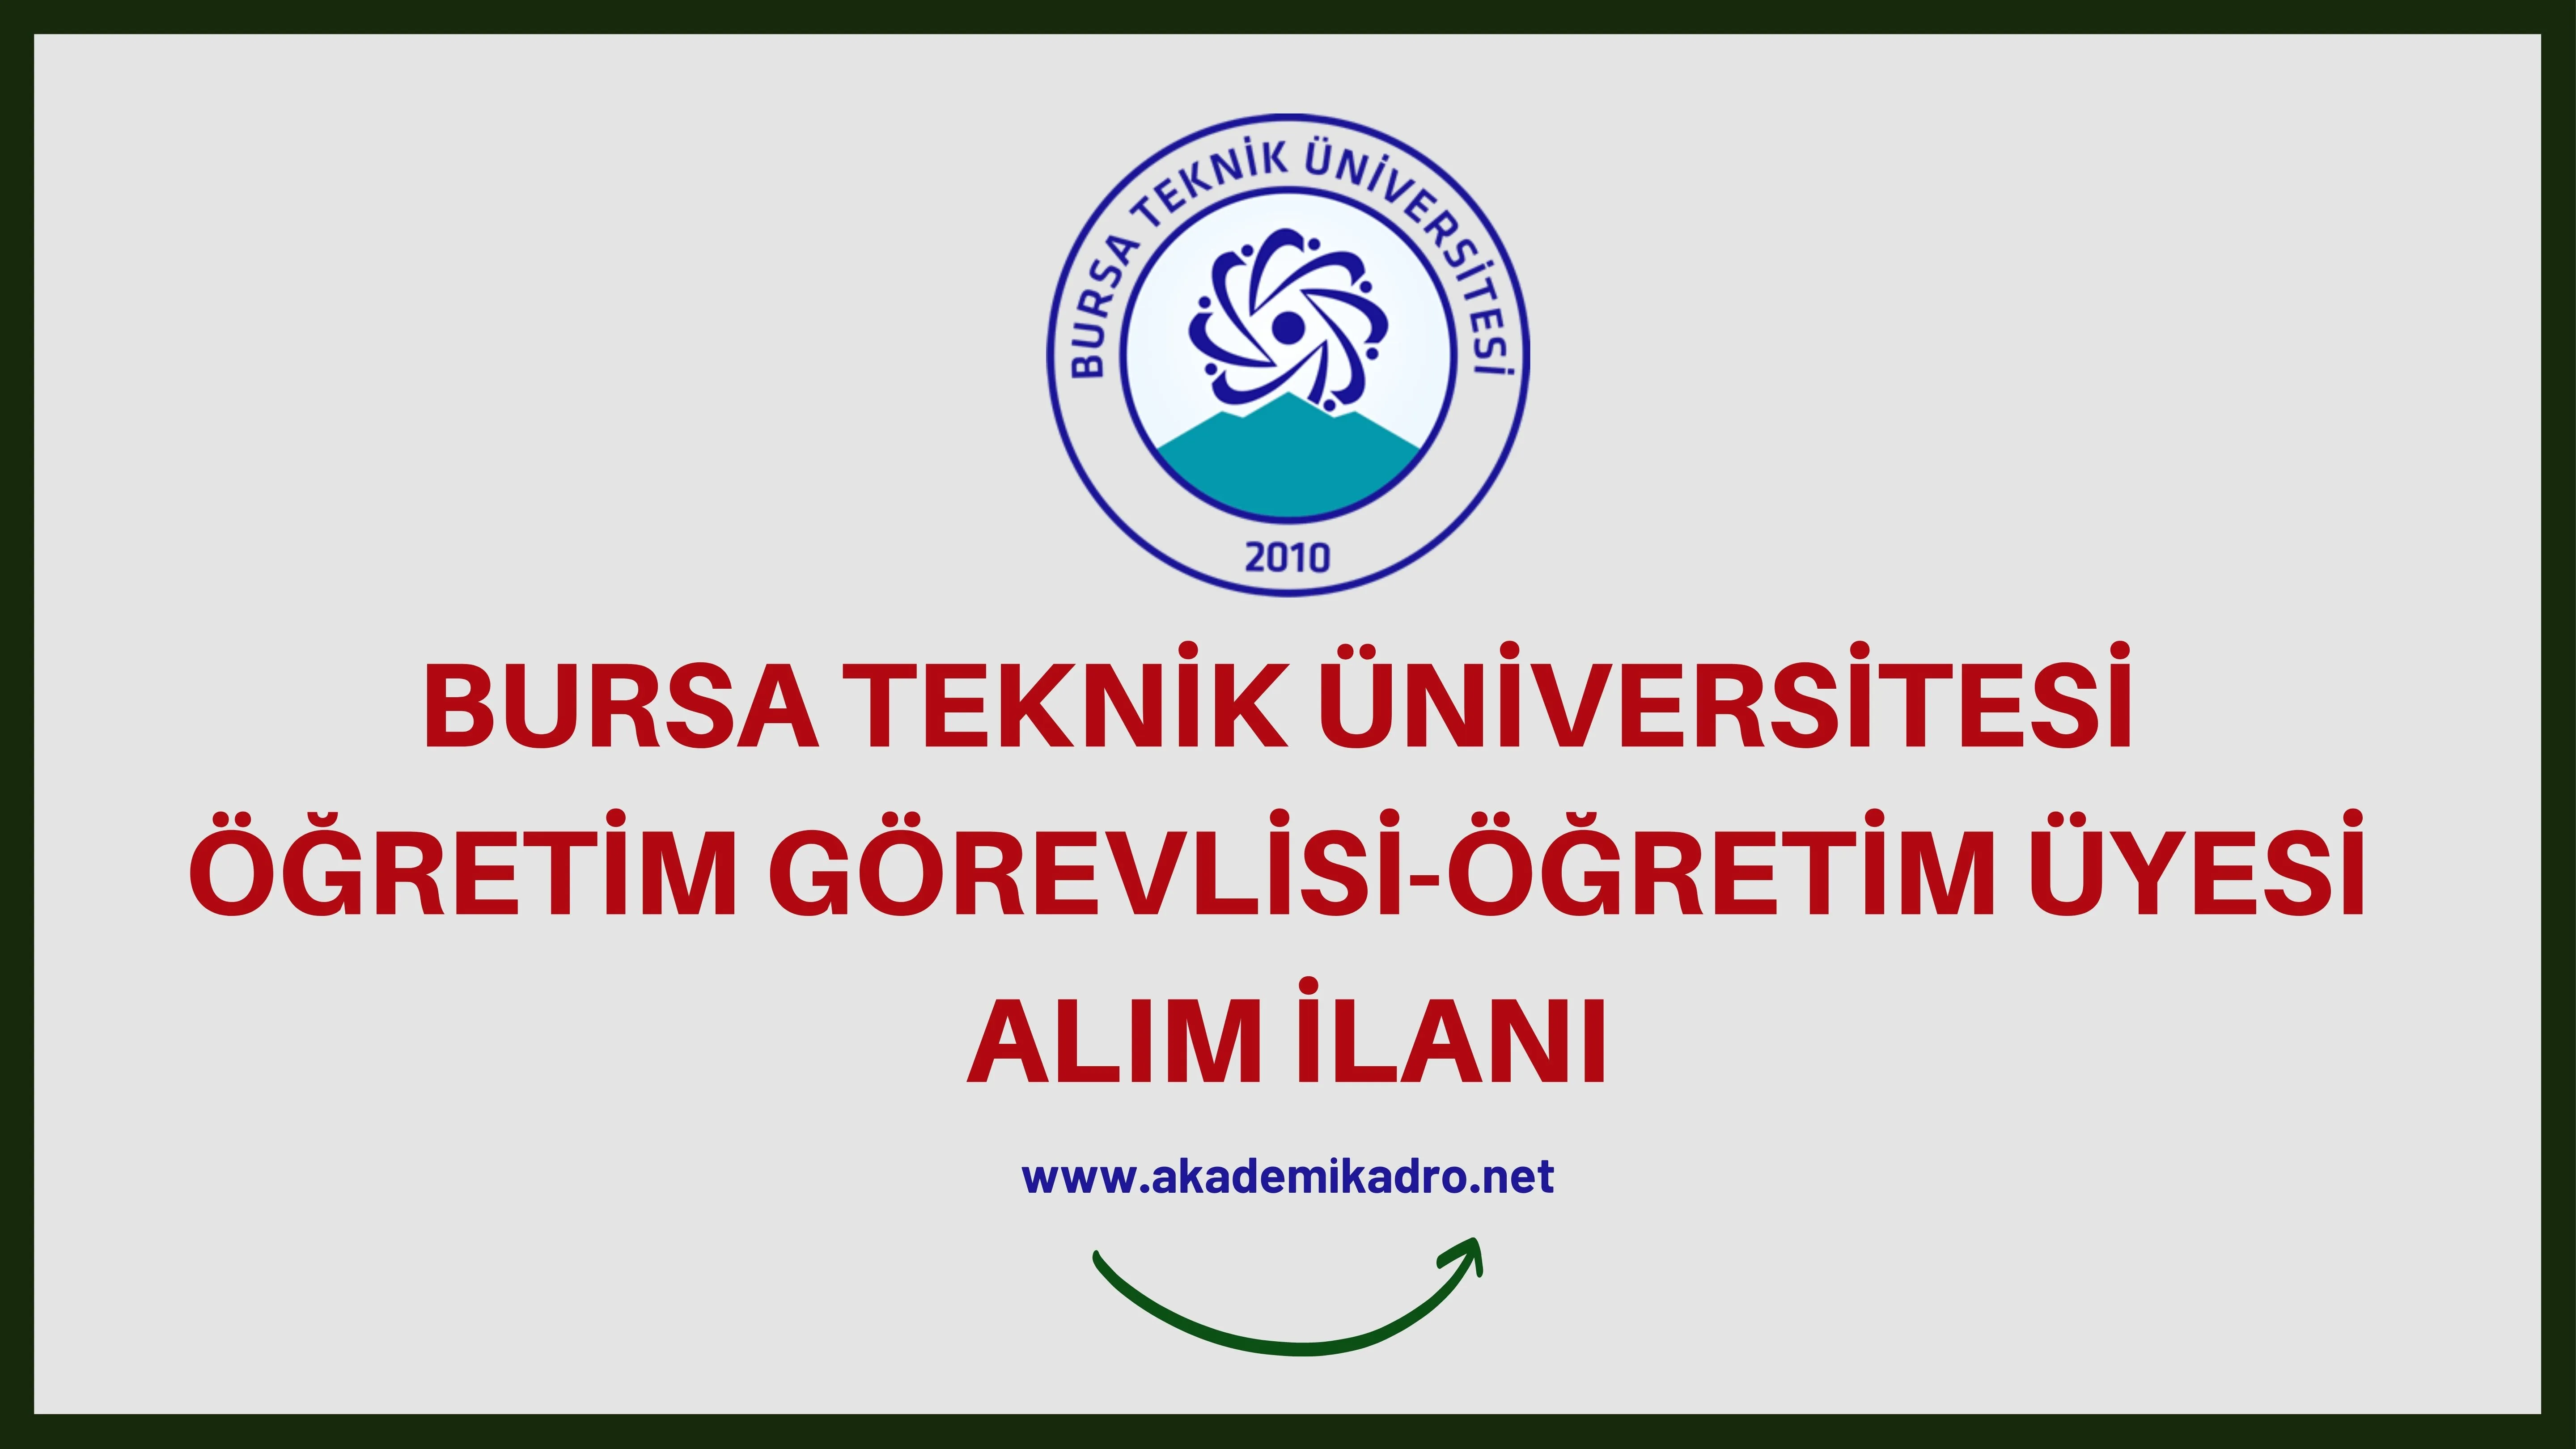 Bursa Teknik Üniversitesi Öğretim görevlisi ve öğretim üyesi olmak üzere 31 Öğretim elemanı alacak. 